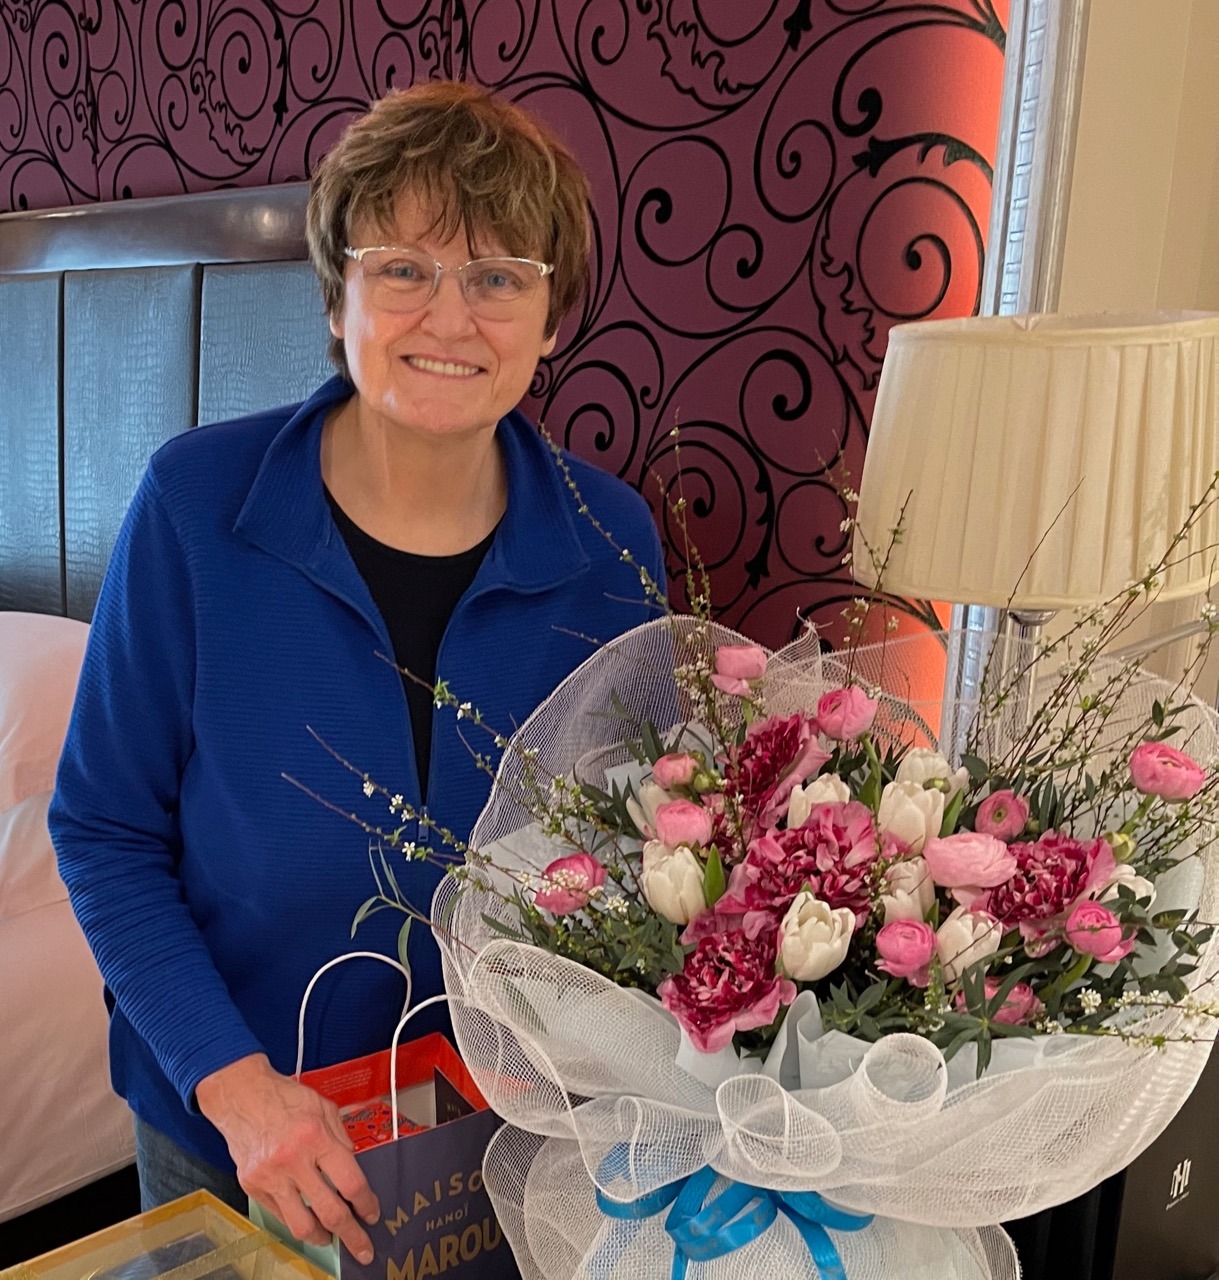 TS. Karikó Katalin và bó hoa mừng sinh nhật lần thứ 67 tại Hà Nội - Ảnh do nhân vật cung cấp